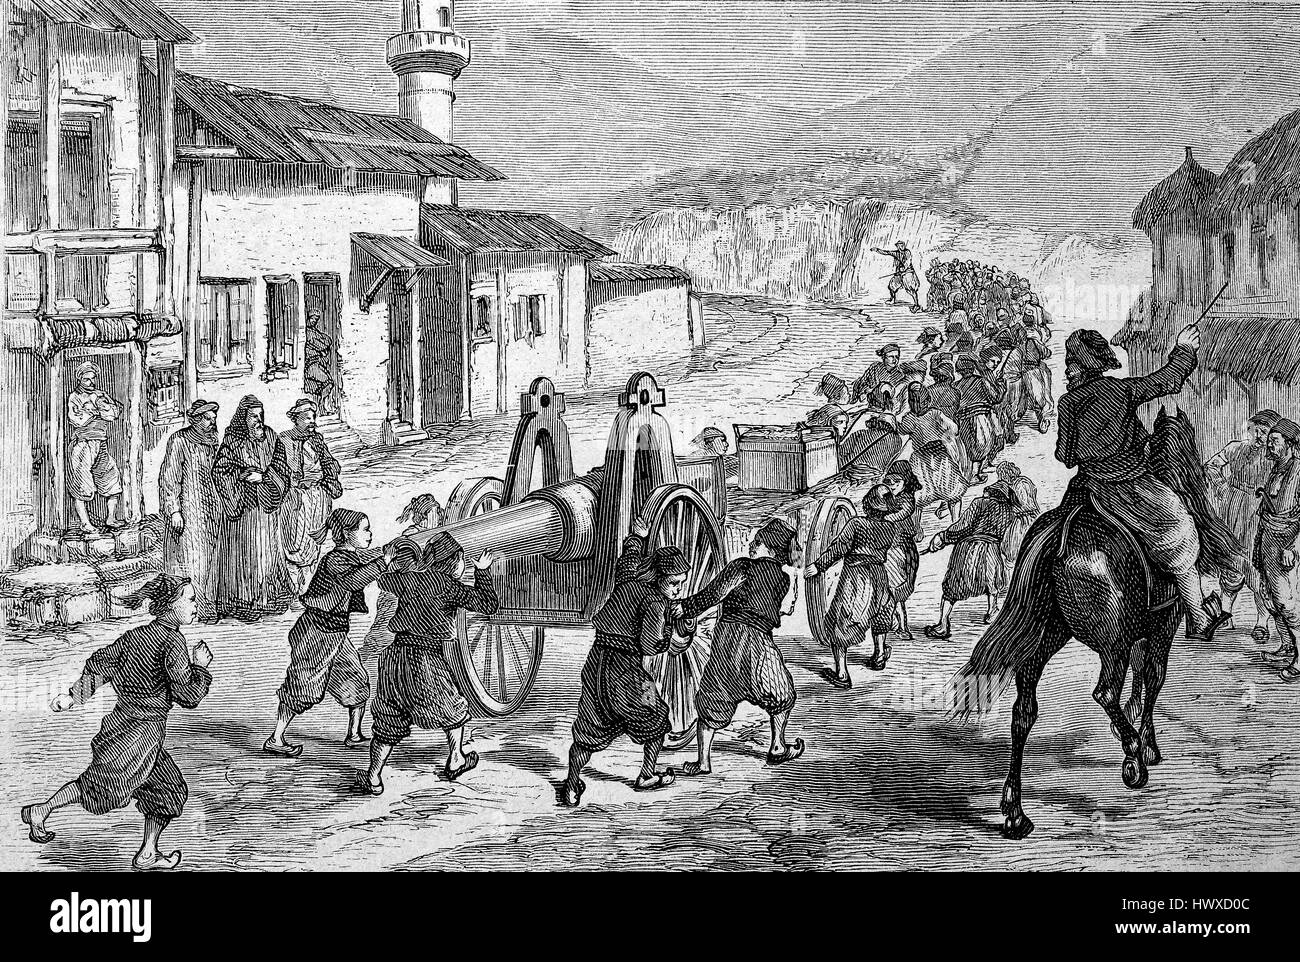 Les enfants turcs tirant un canon Krupp à travers un village à Erzurum à leur destination, en février 1878, l'Arménie, la Turquie, la reproduction d'une image, gravure sur bois de l'année 1881, l'amélioration numérique Banque D'Images